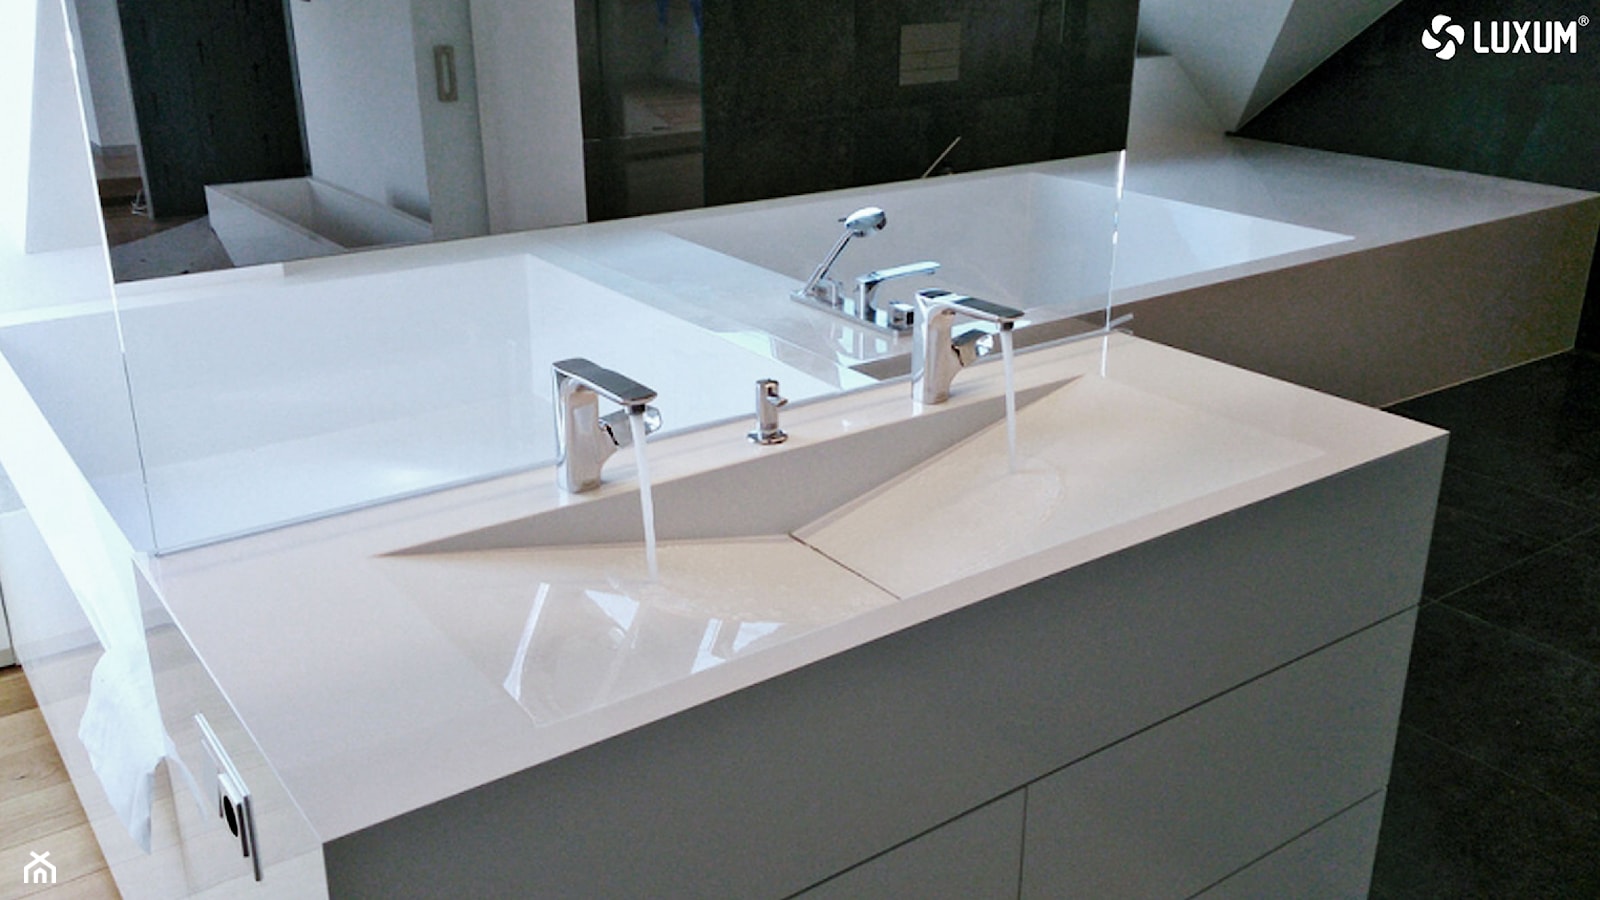 Nowoczesna zabudowa łazienkowa z kompozytu GFK LUXUM. - zdjęcie od Luxum - Homebook